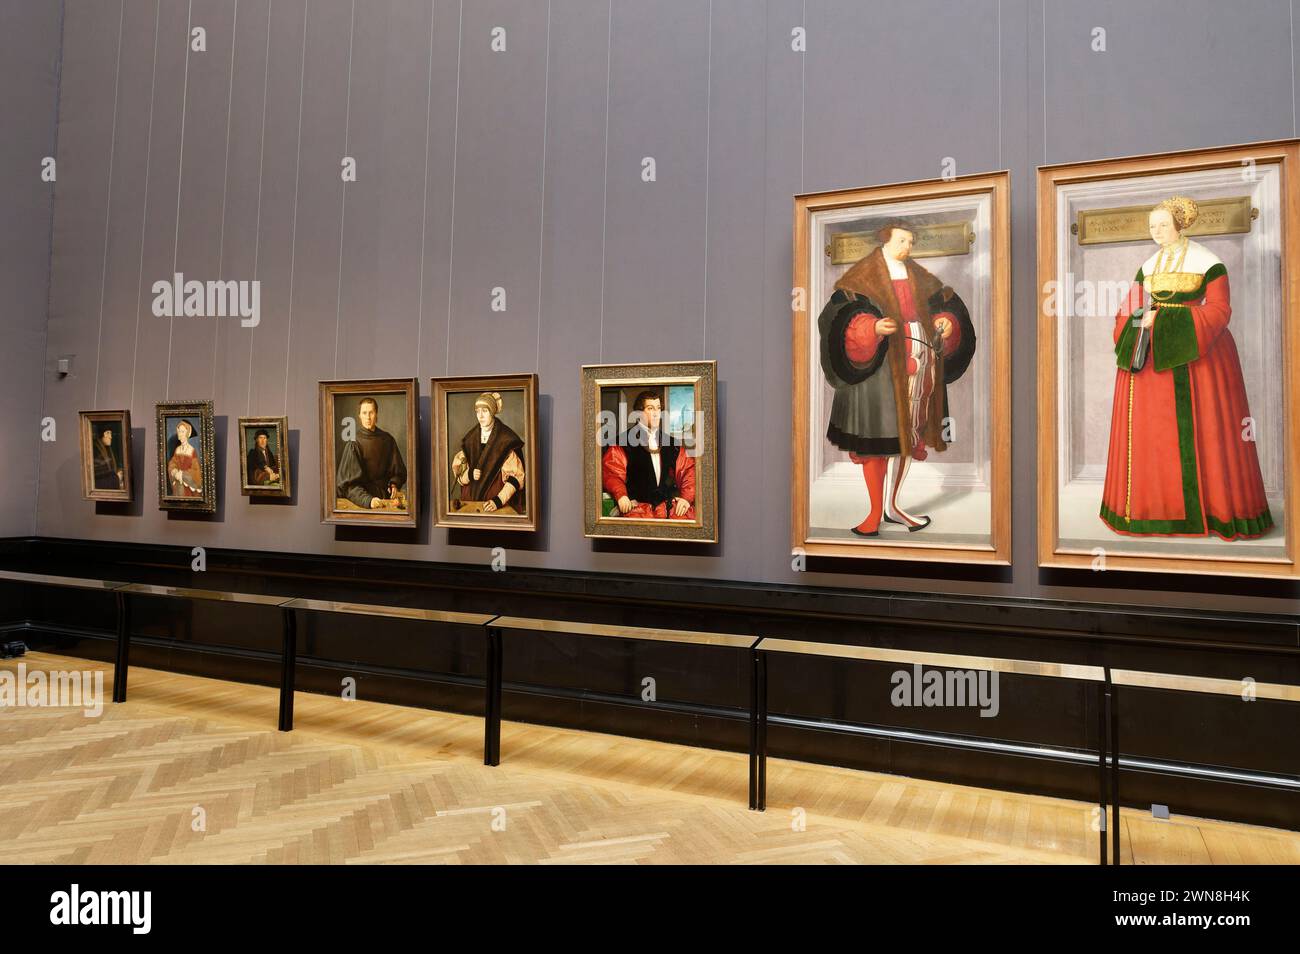 Vienne, Autriche. La galerie de photos du Musée d'histoire de l'art de Vienne (KHM). Christoph Amberger, portrait d'un homme, portrait d'une femme (extrême droite) Banque D'Images